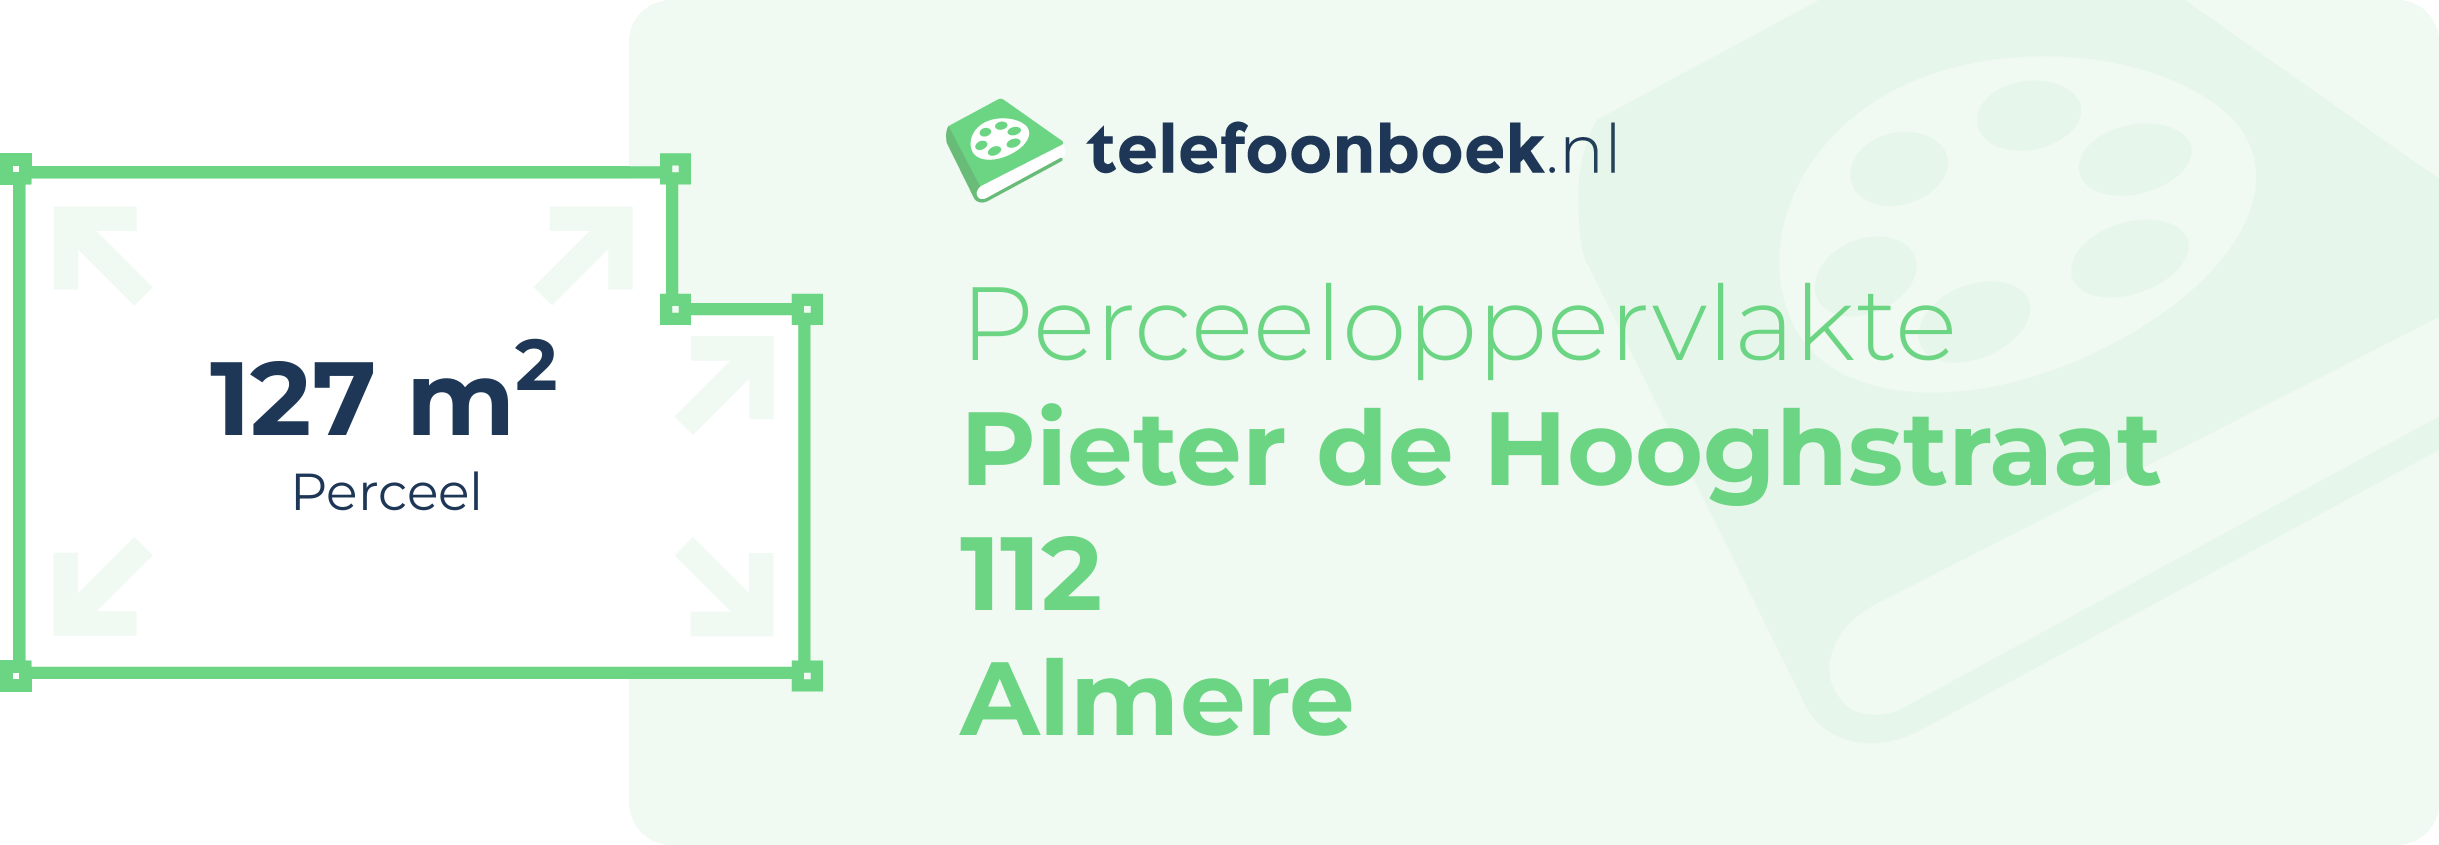 Perceeloppervlakte Pieter De Hooghstraat 112 Almere